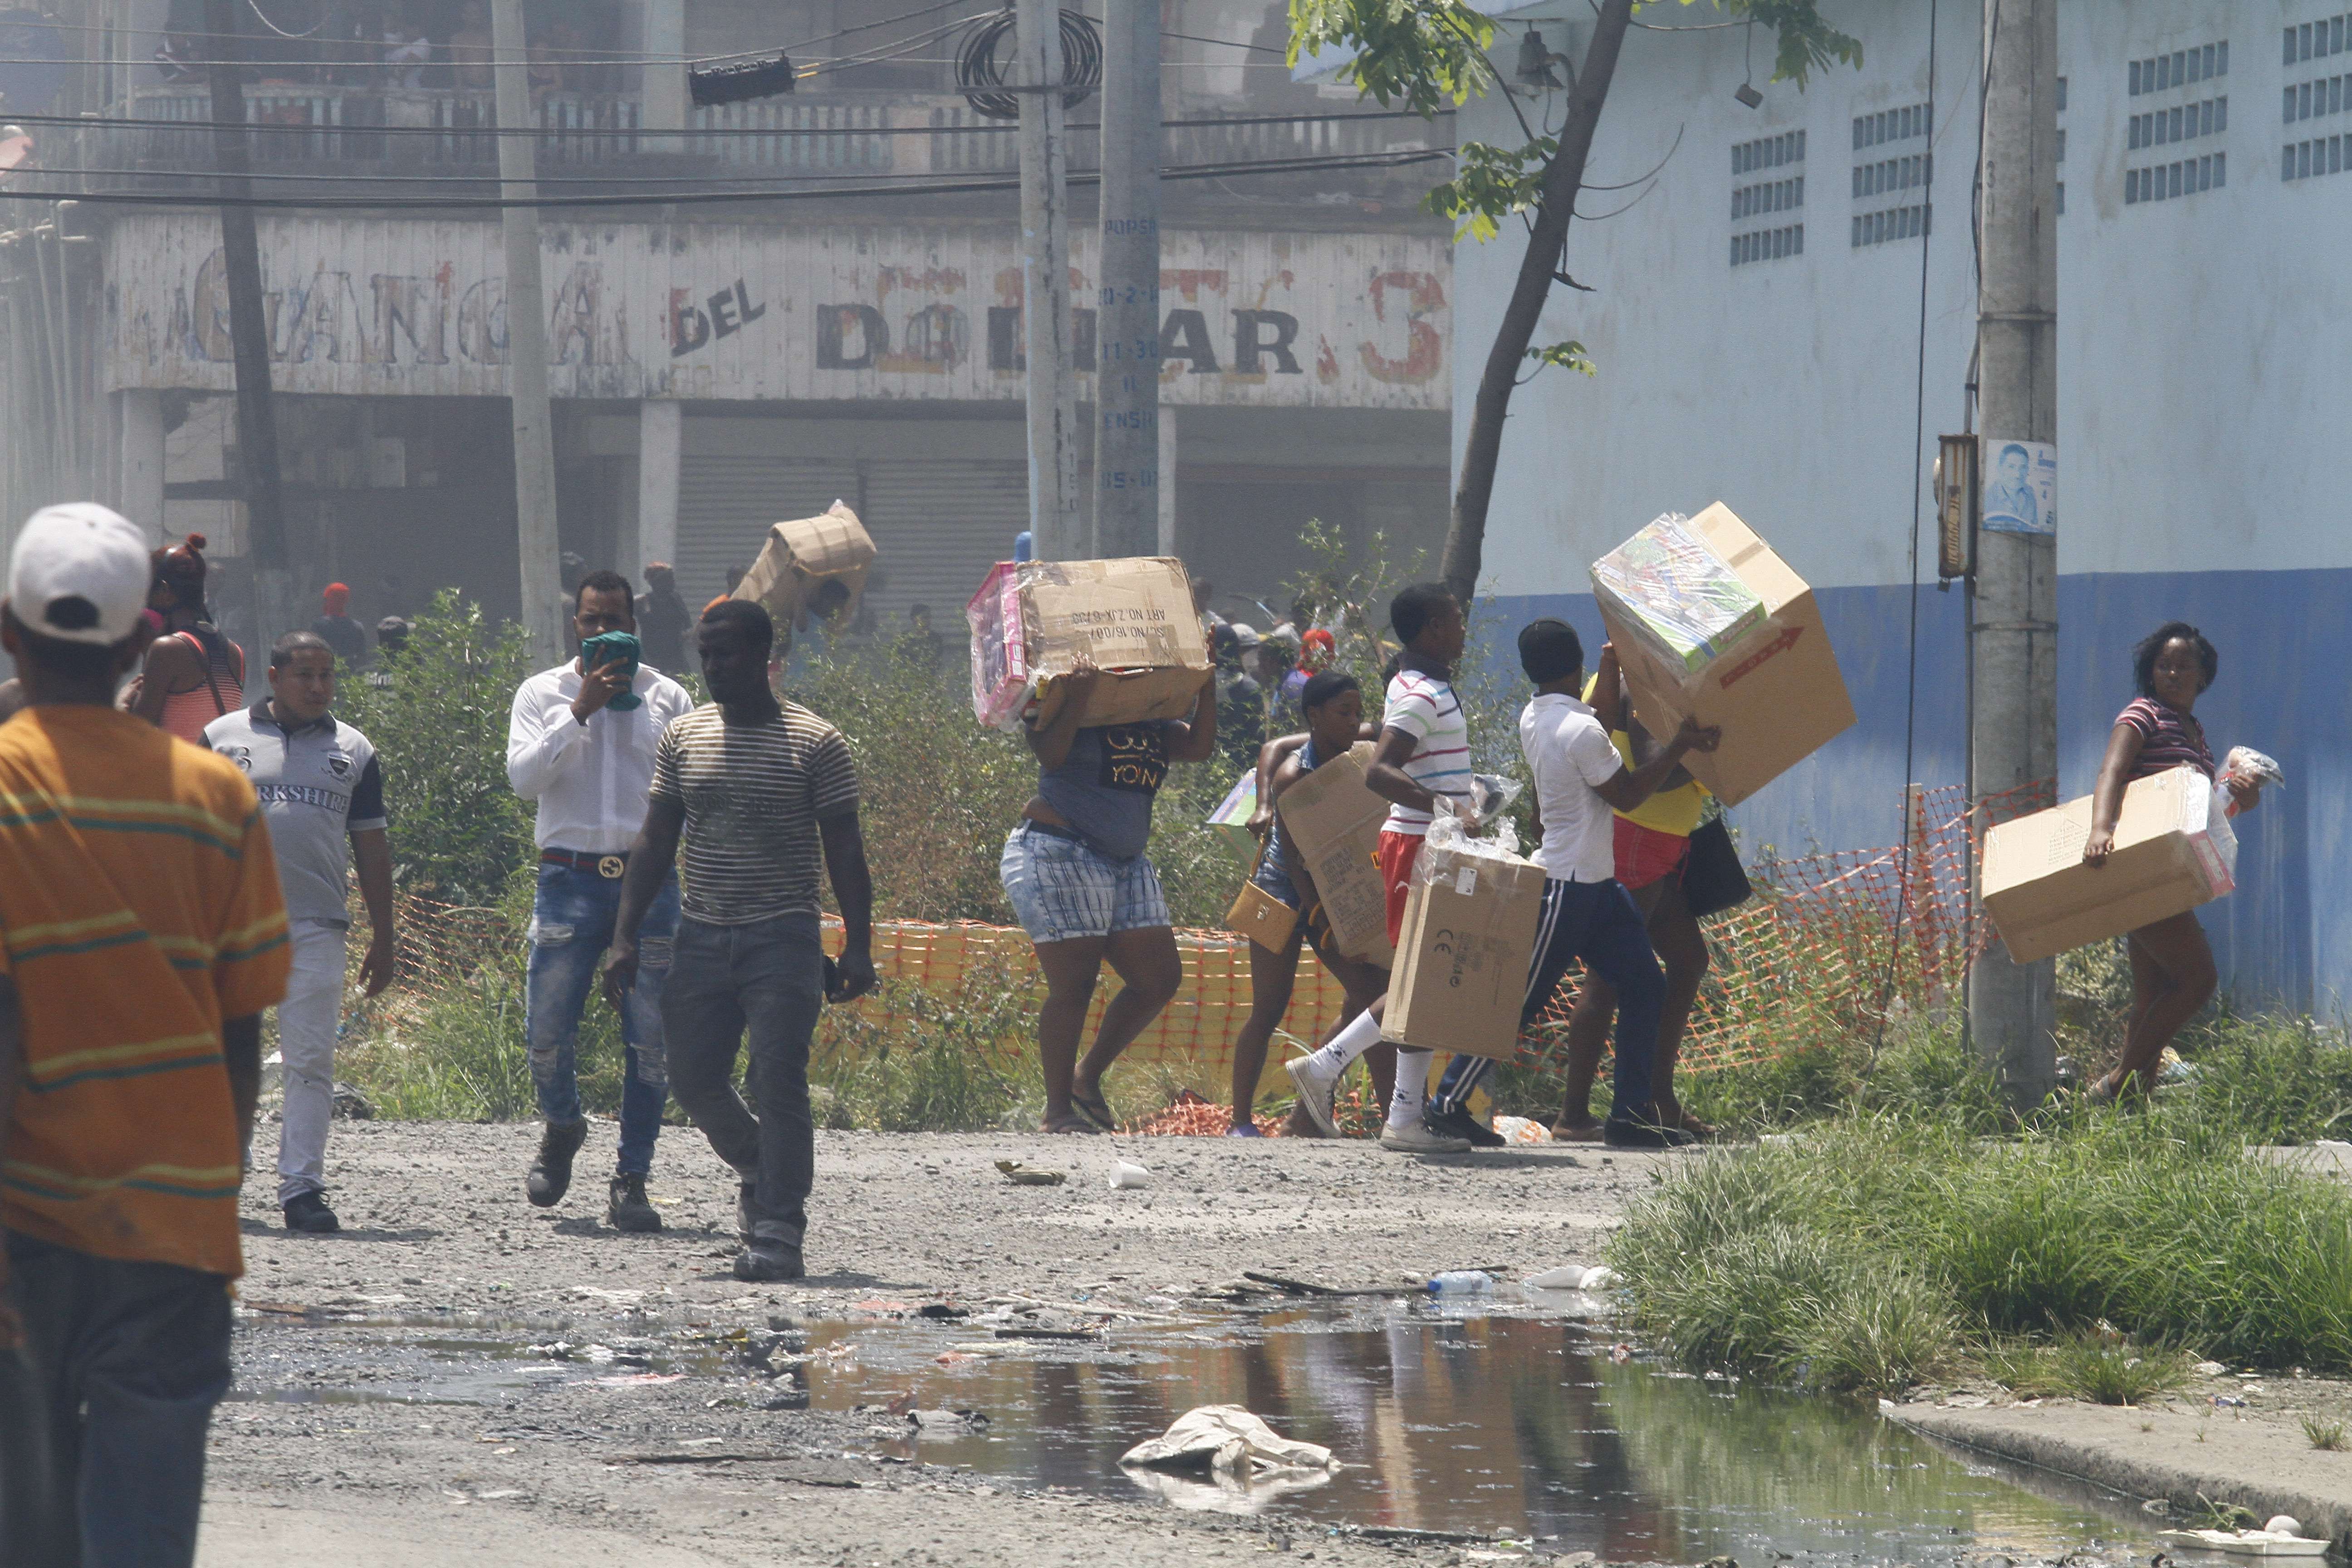 La huelga en Colón provocó pérdidas materiales y heridos. Foto: Edwards Santos